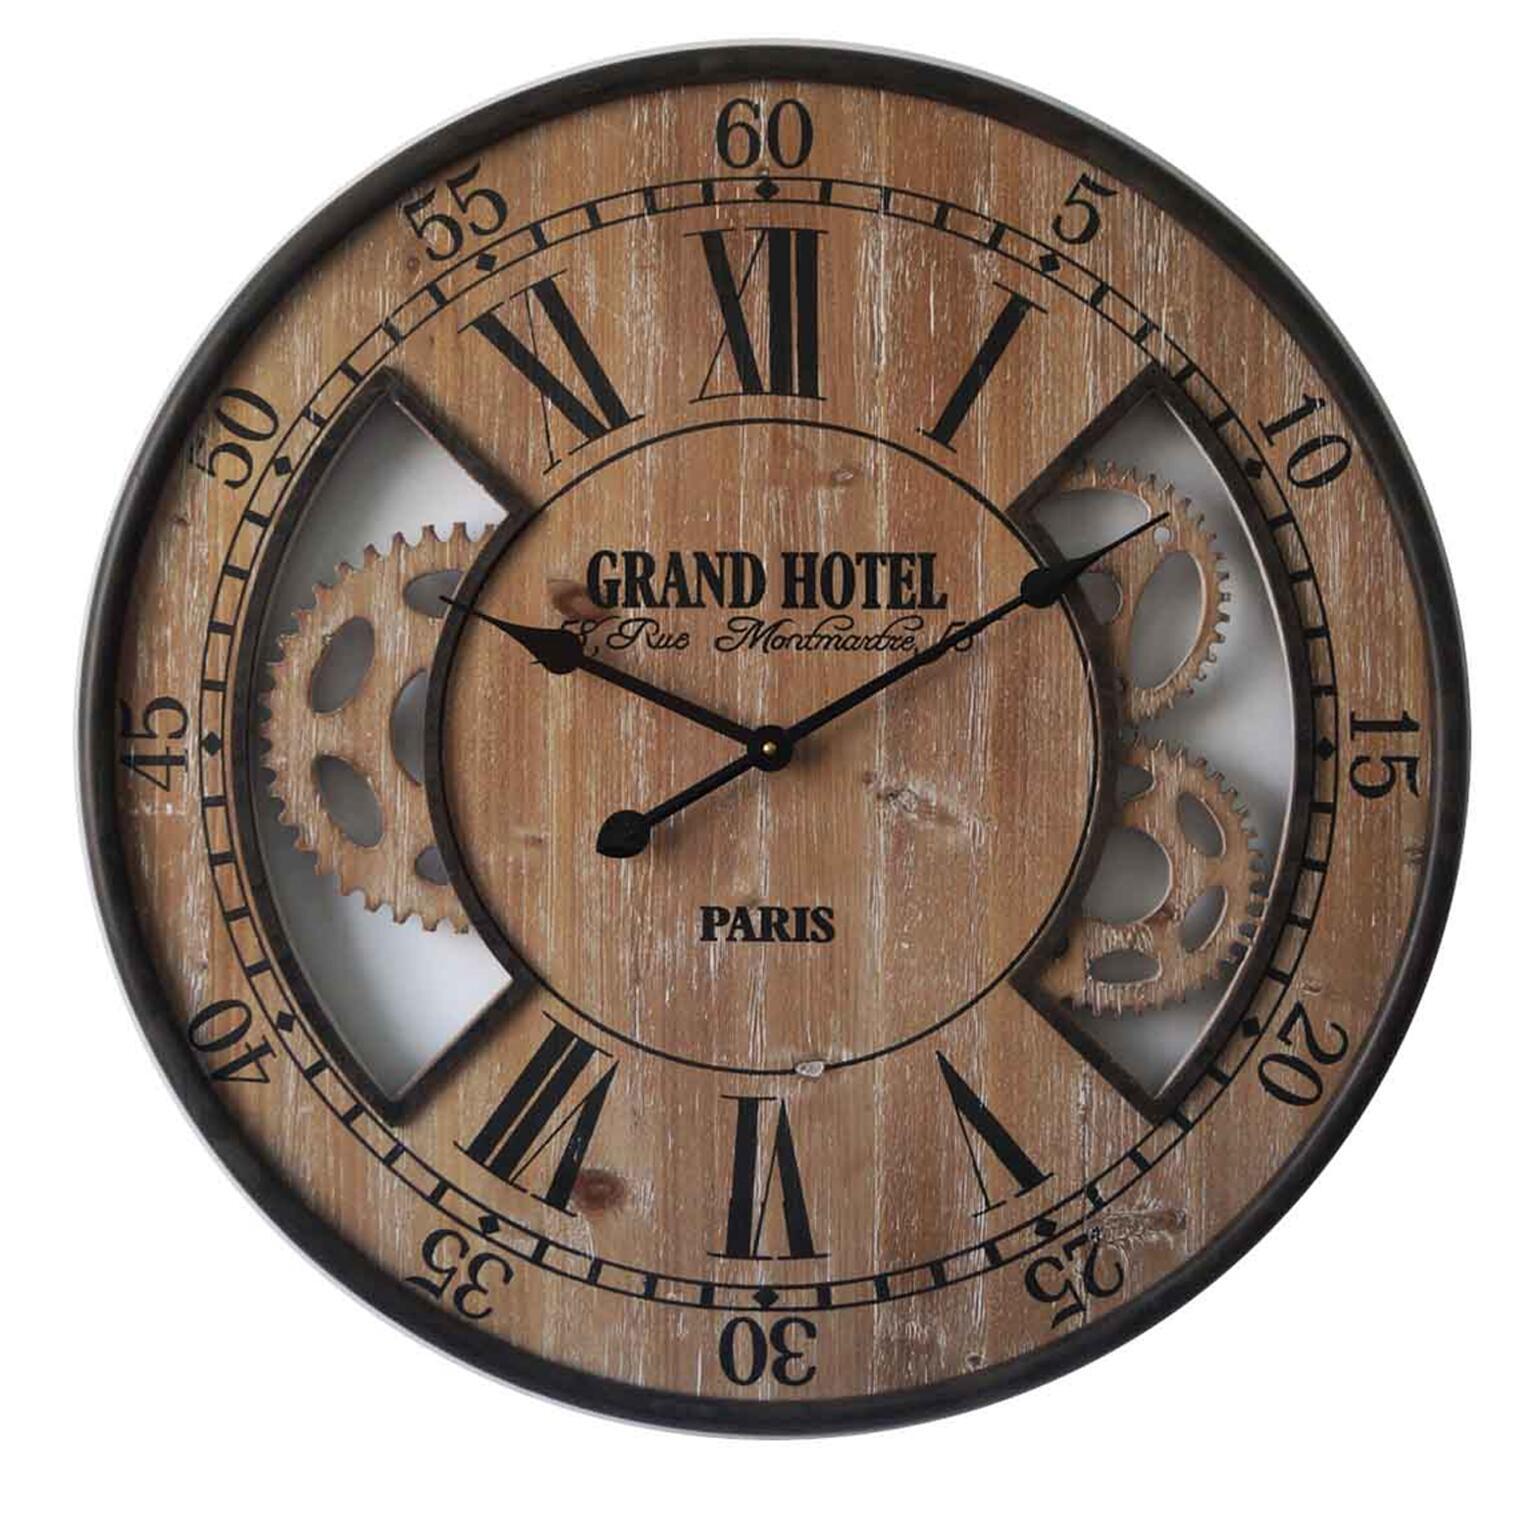 Su-luoyu Horloge Murale Industrielle Pendules Murales De Mode Rétro Horloges Silencieuses Horloge Murale Numérique pour Maison Salon Bureau Décor Horloges 